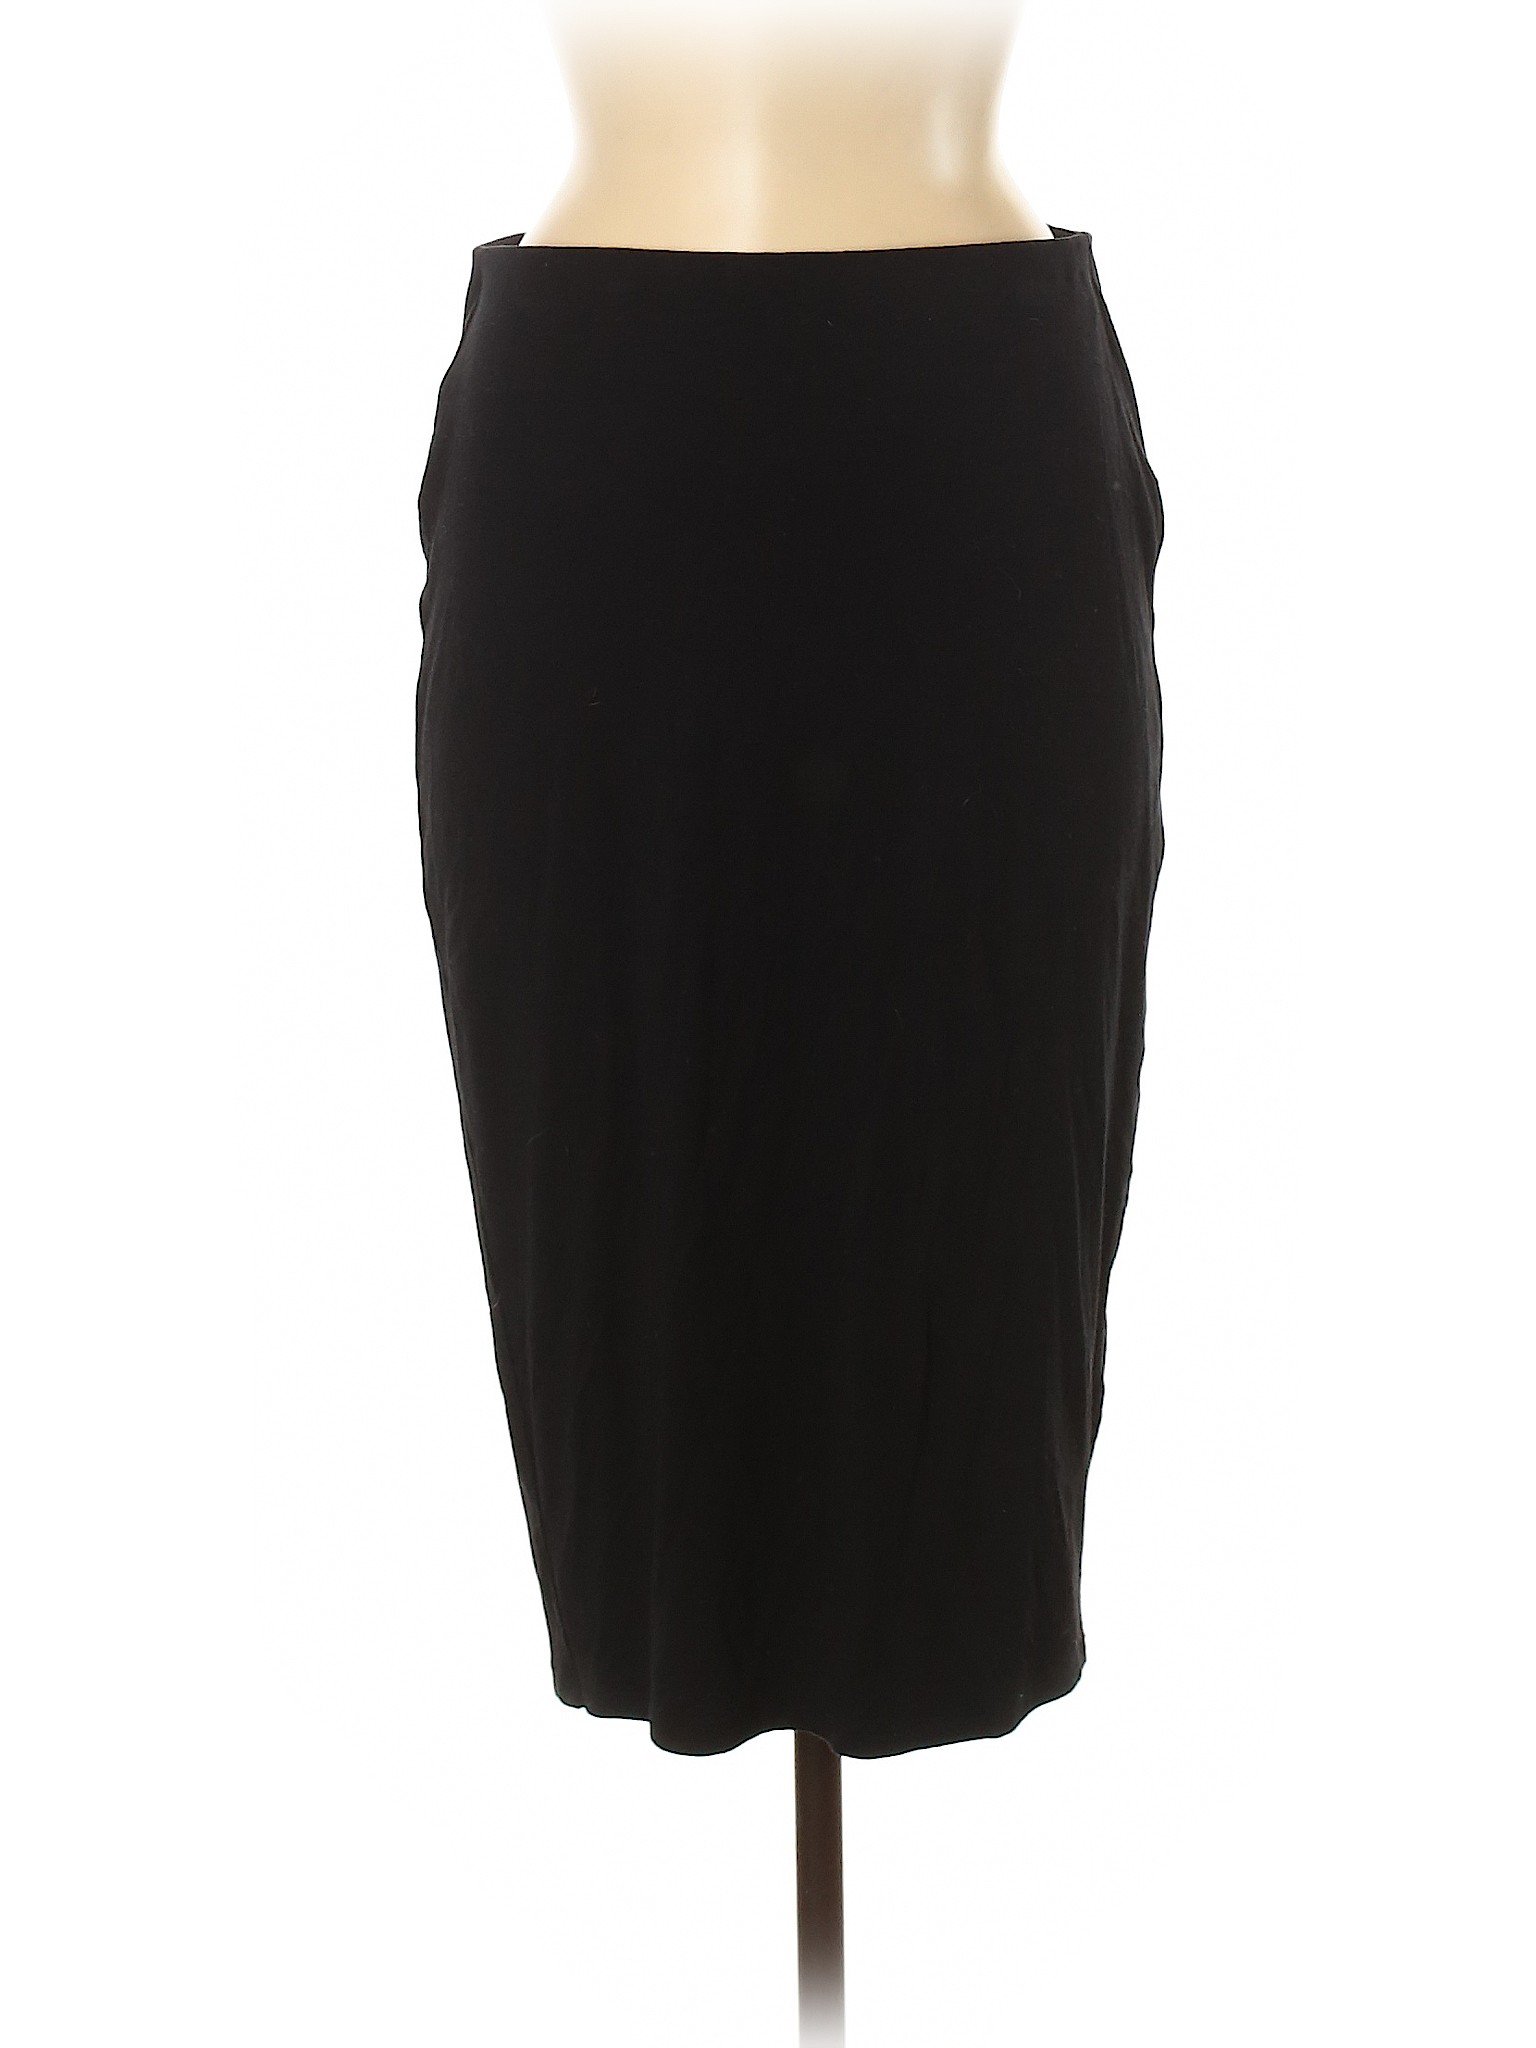 Old Navy Women Black Casual Skirt M | eBay